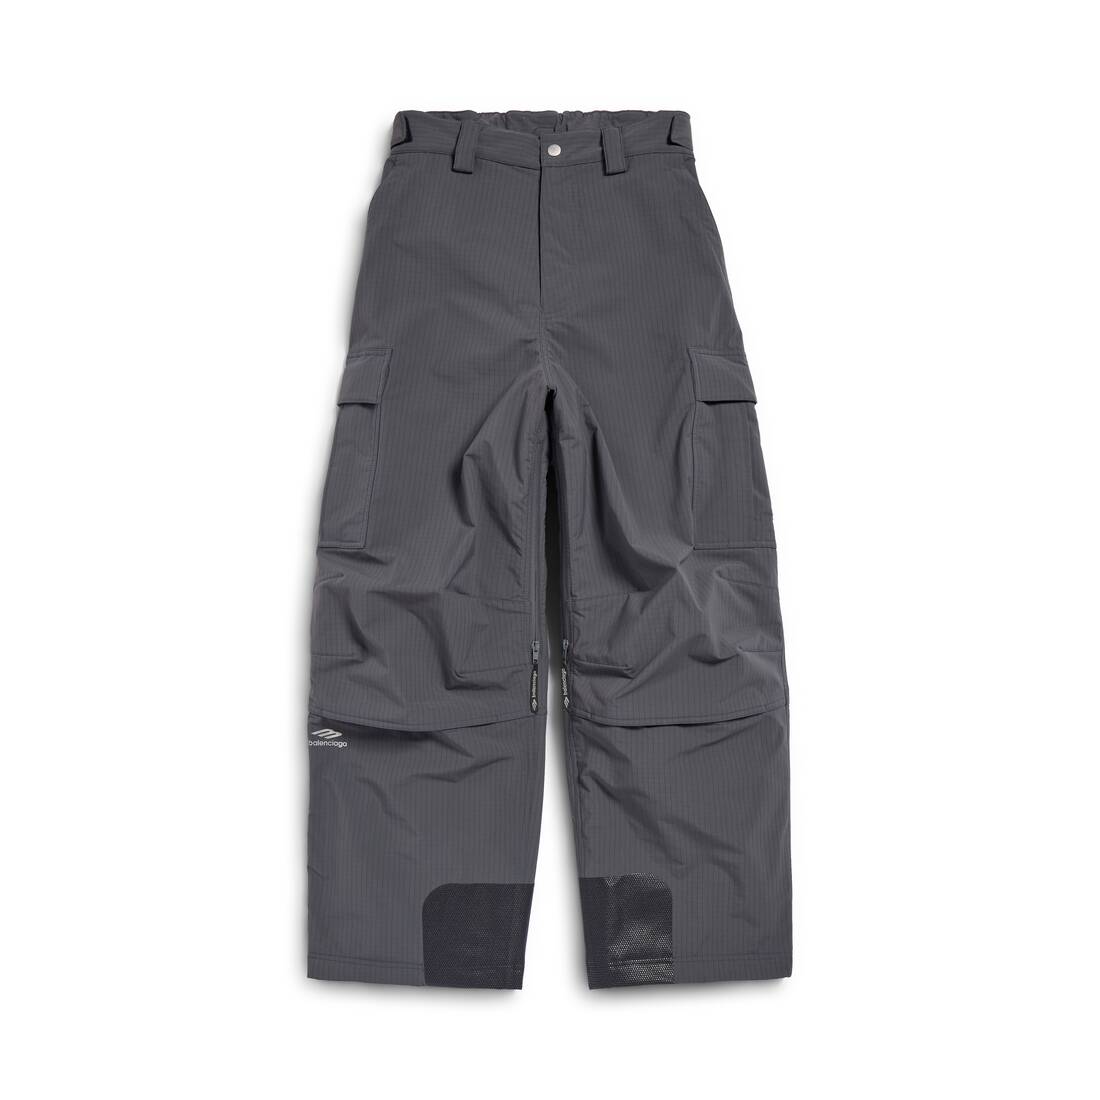 Men's Skiwear - 3b Sports Icon Ski Cargo Pants in Dark Grey